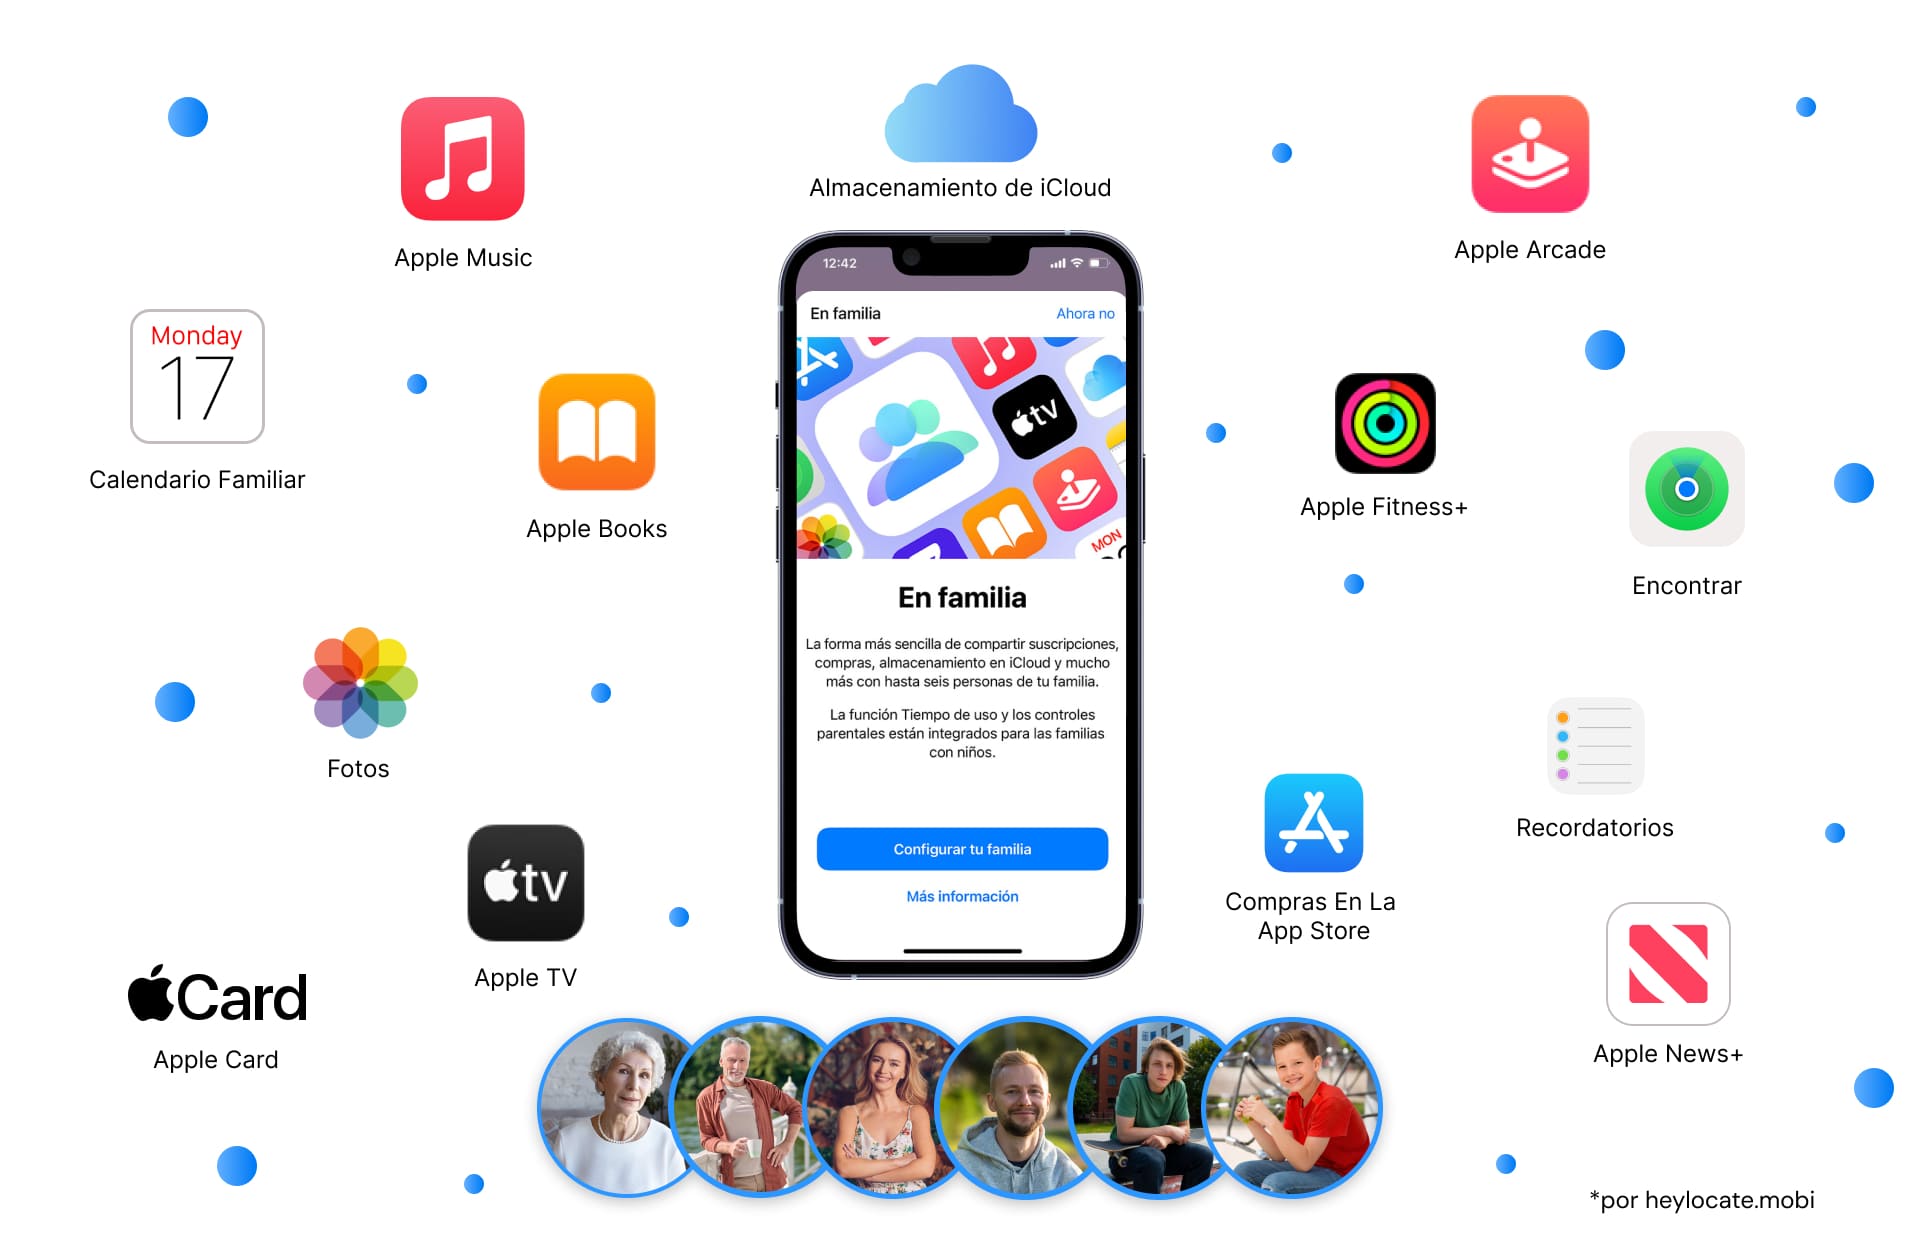 Una imagen que muestra una pantalla de iPhone con la notificación de configuración de Compartir en Familia, rodeada por iconos de varios servicios de Apple como Apple Music, Apple Books, iCloud y más